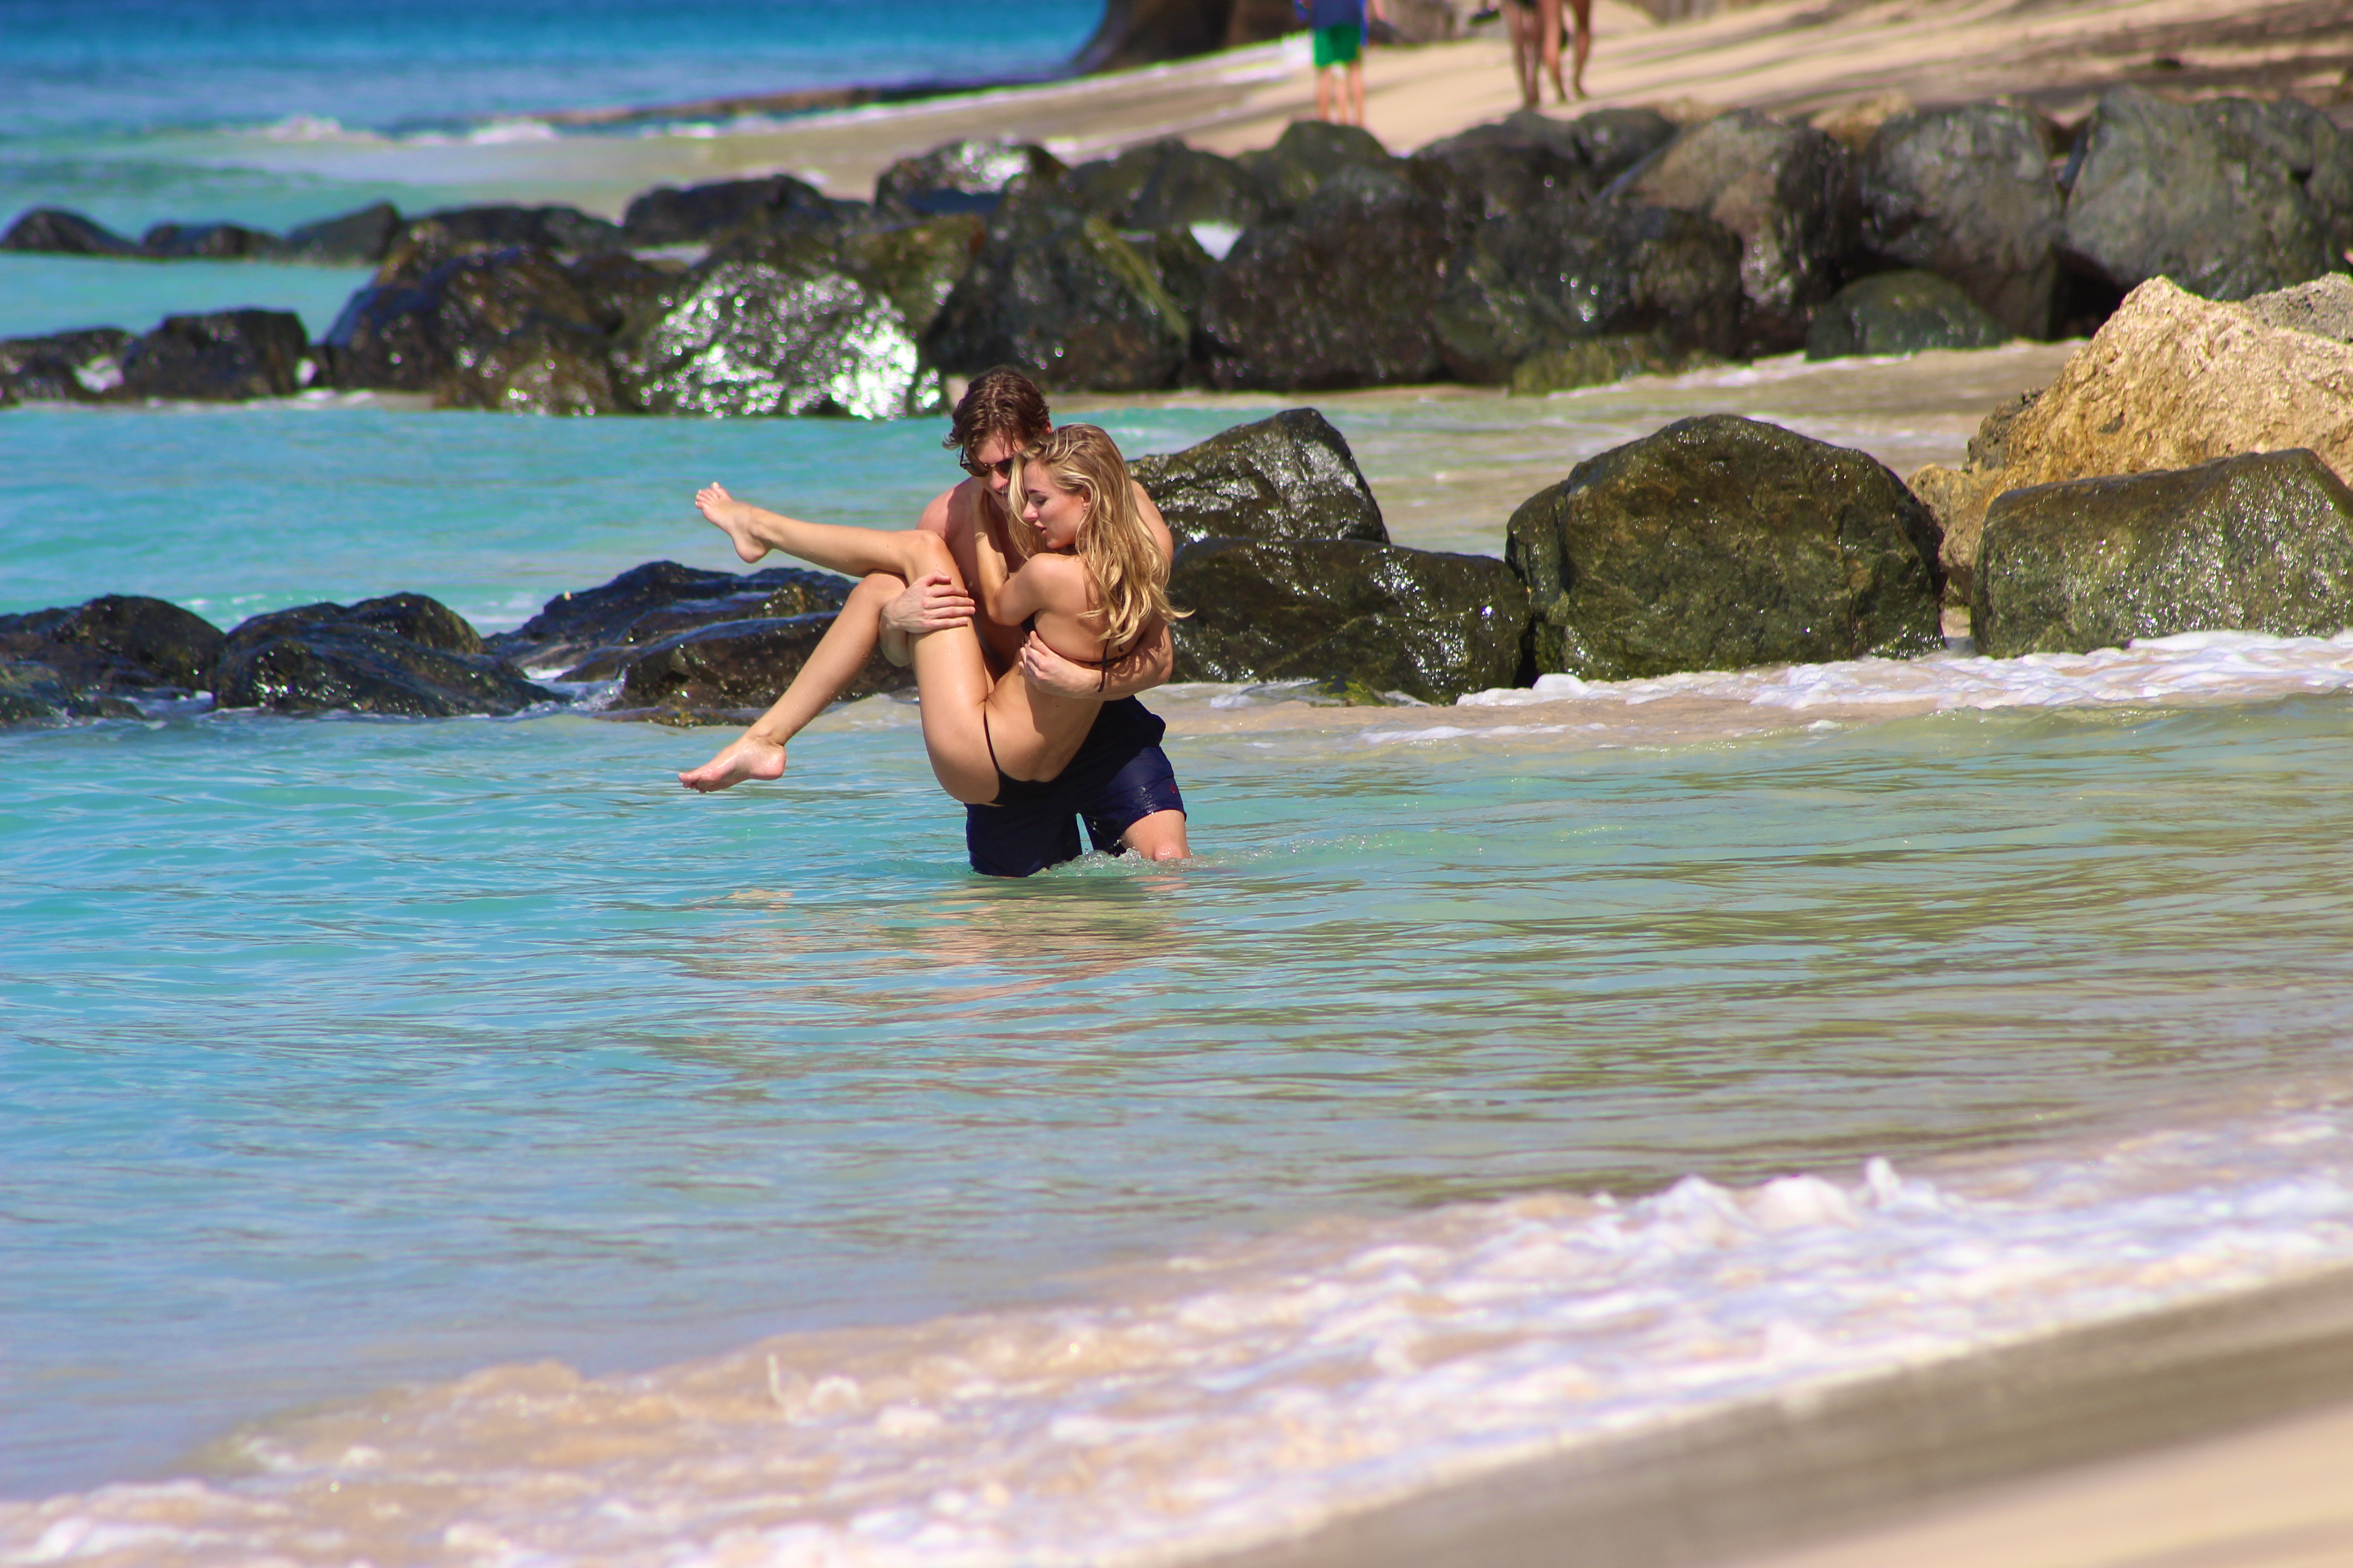 Kimberley_Garner_wearing_sexy_bikini_on_the_beach_in_Barbados_39x_HQ_26.jpg